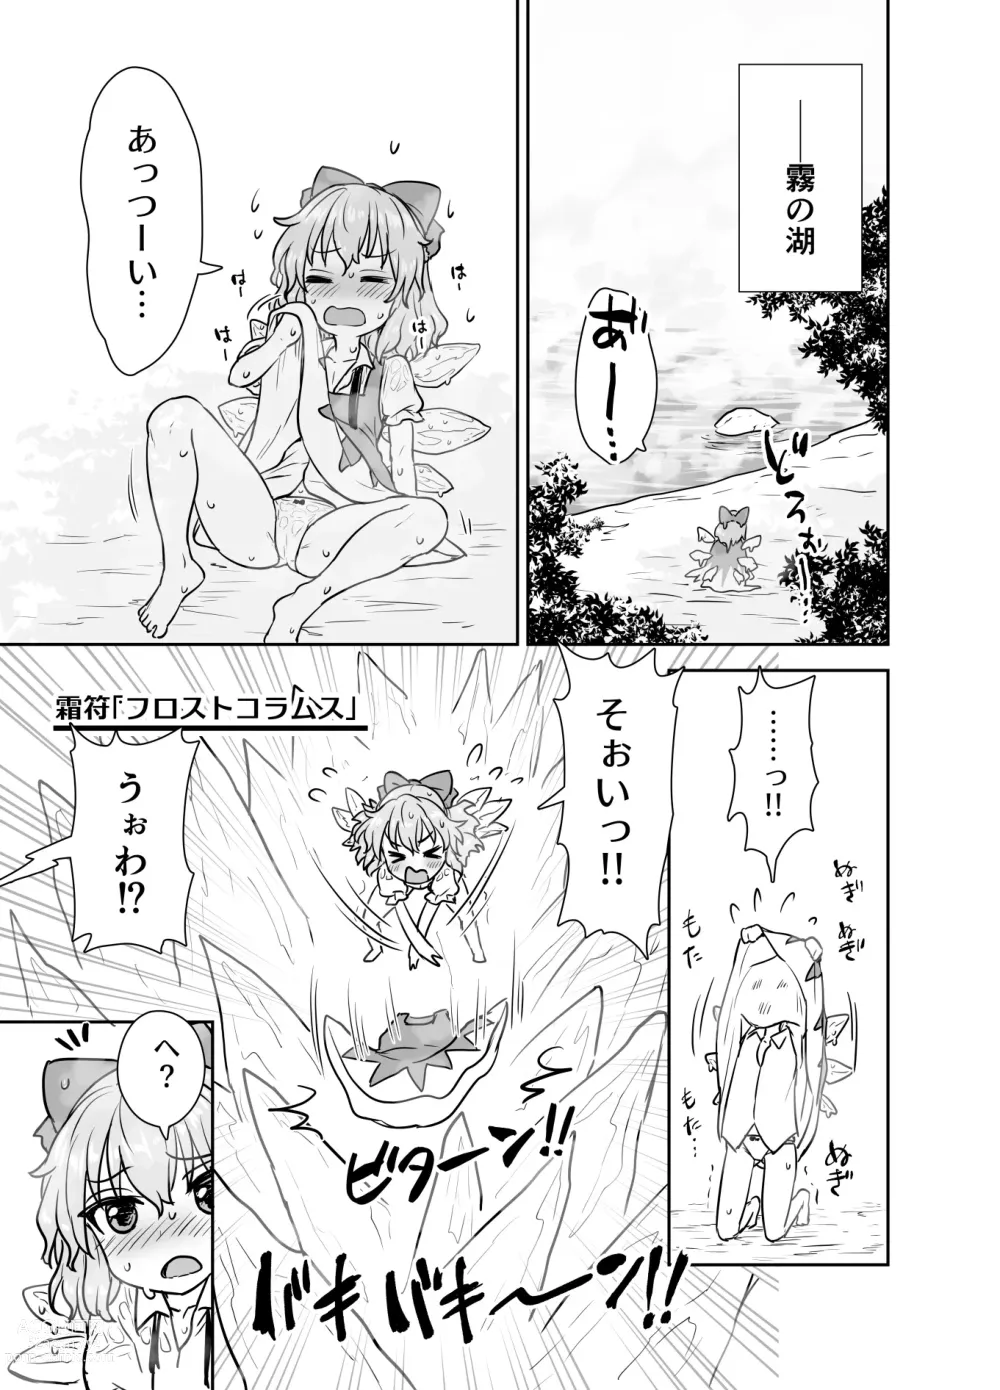 Page 2 of doujinshi Manatsu no cirno-chan